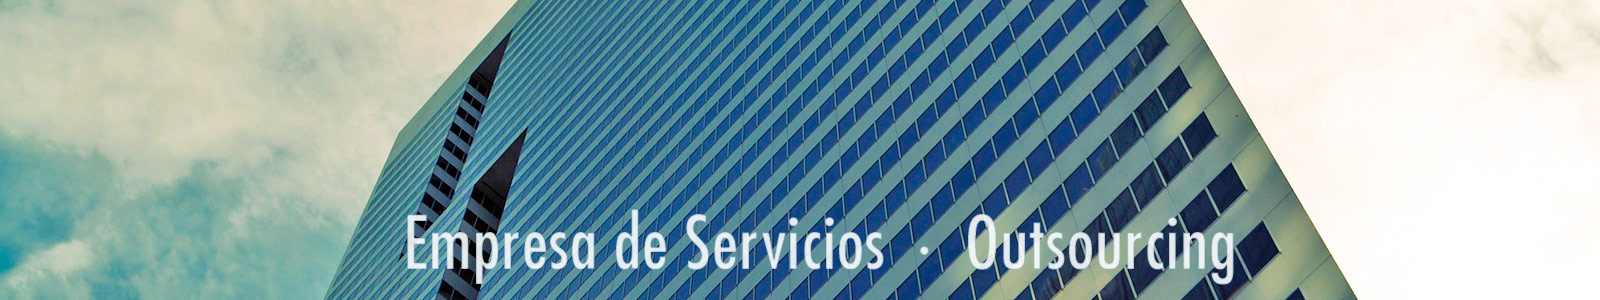 Servicios de mantenimiento, limpieza y seguridad en Madrid y Toledo.